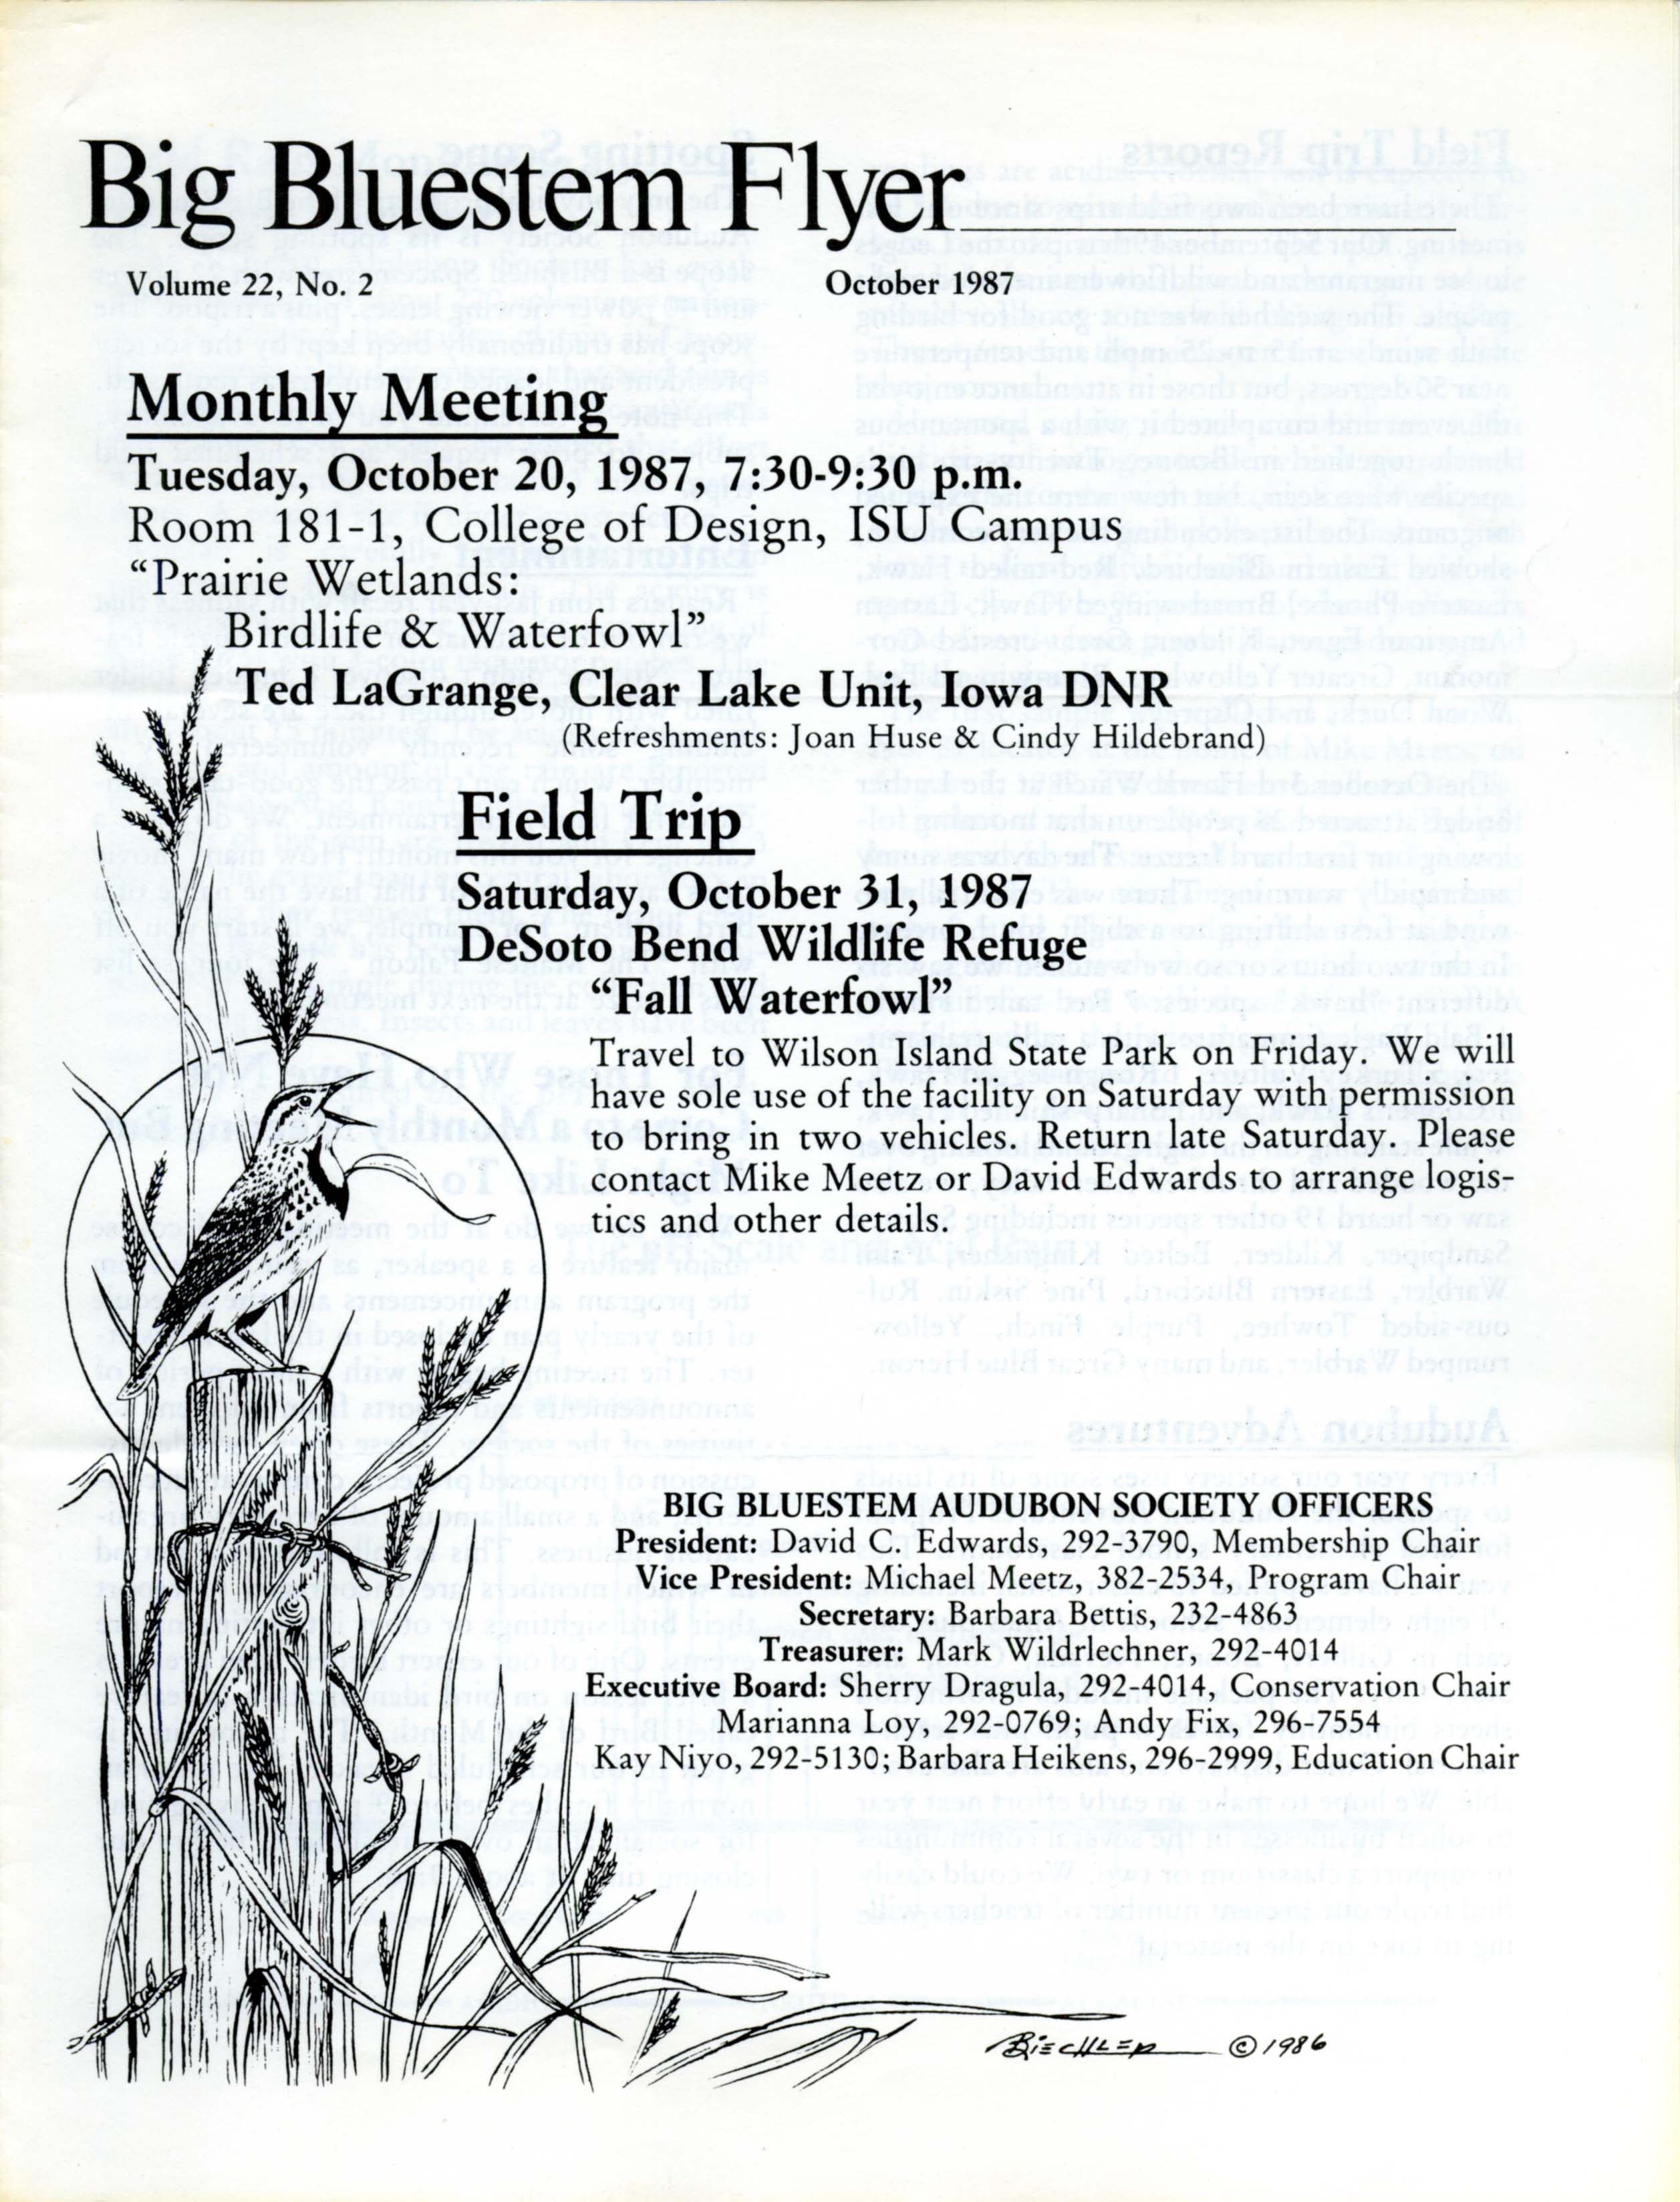 Big Bluestem Flyer, Volume 22, Number 2, October 1987